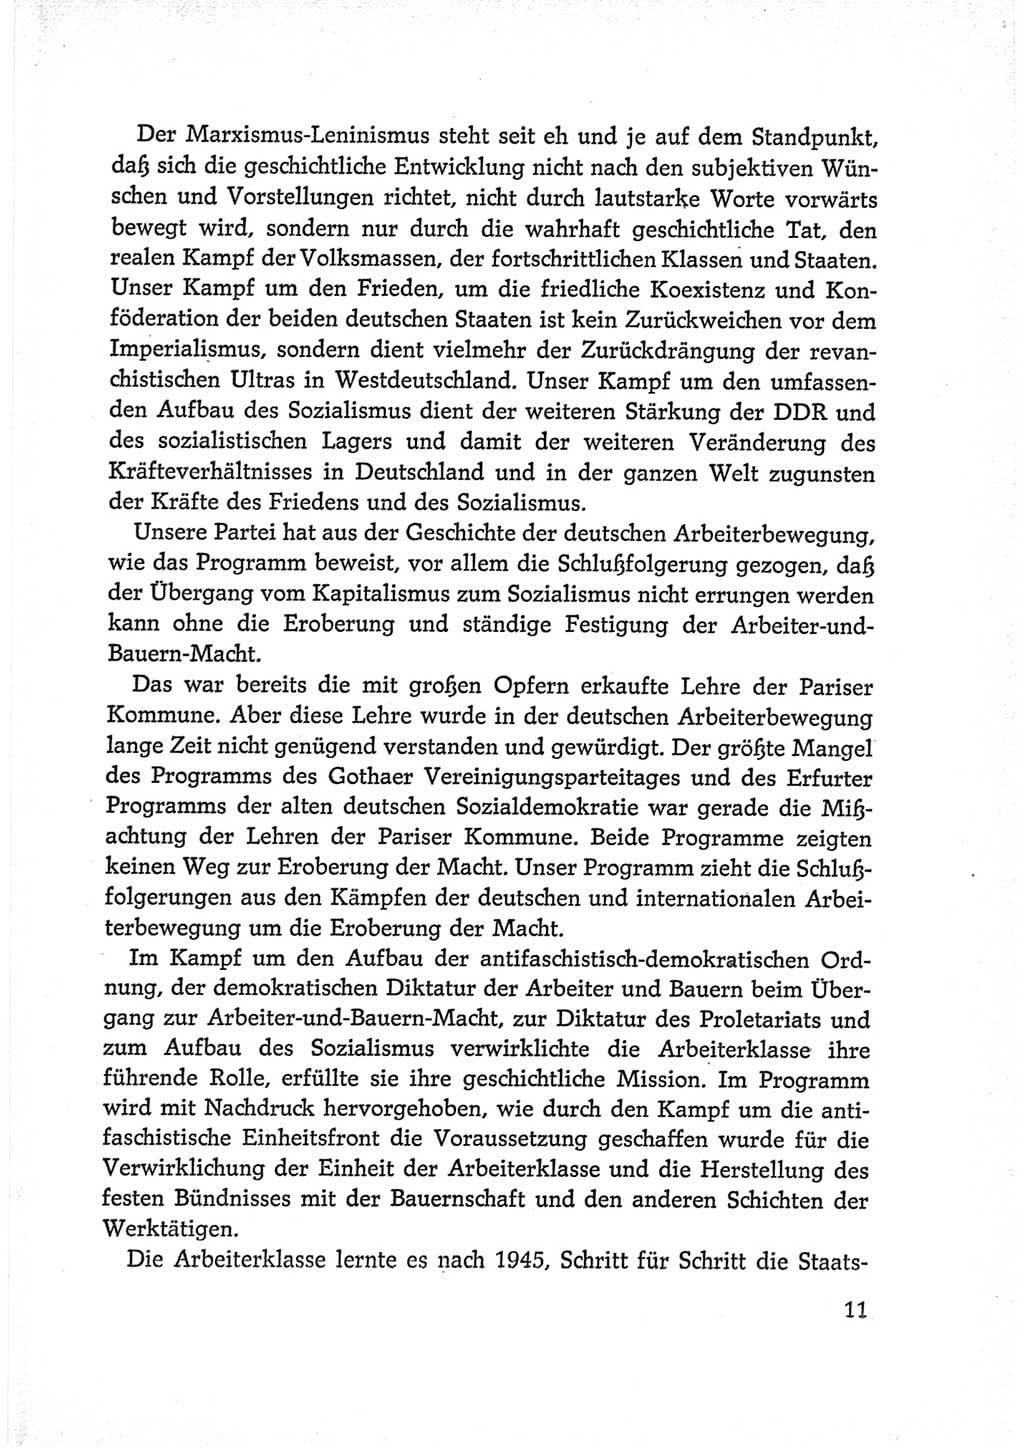 Protokoll der Verhandlungen des Ⅵ. Parteitages der Sozialistischen Einheitspartei Deutschlands (SED) [Deutsche Demokratische Republik (DDR)] 1963, Band Ⅱ, Seite 11 (Prot. Verh. Ⅵ. PT SED DDR 1963, Bd. Ⅱ, S. 11)